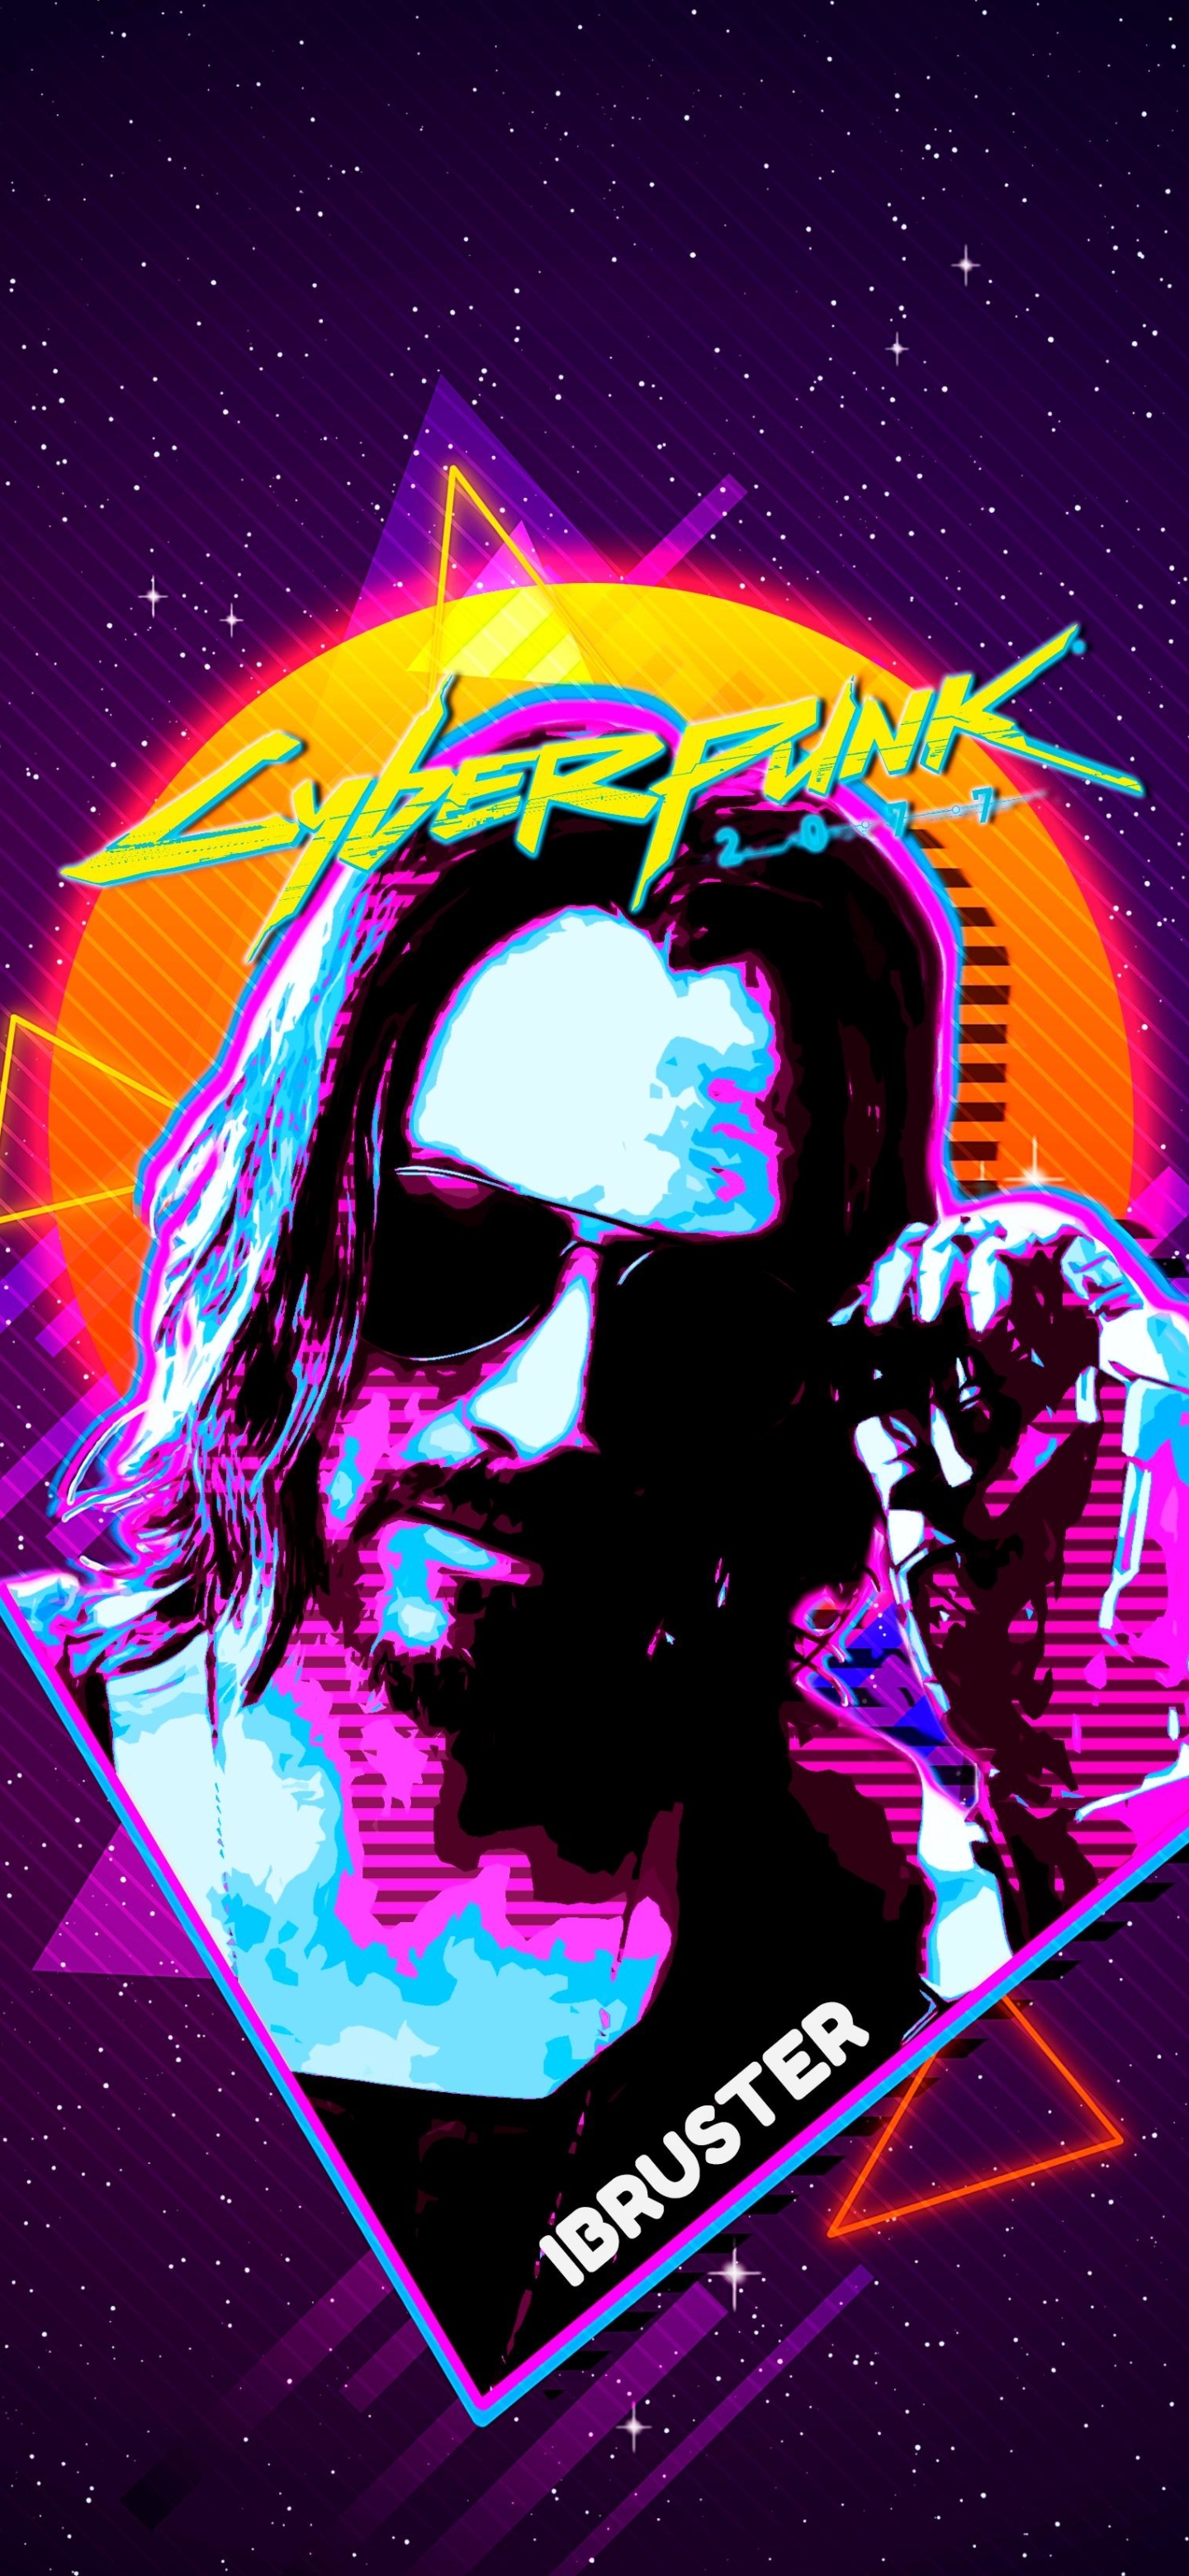 1440x3120 Keanu Reeves Cyberpunk 2077 Retro Art 1440x3120 Resolution Wallpaper Hd Artist 4k 2286